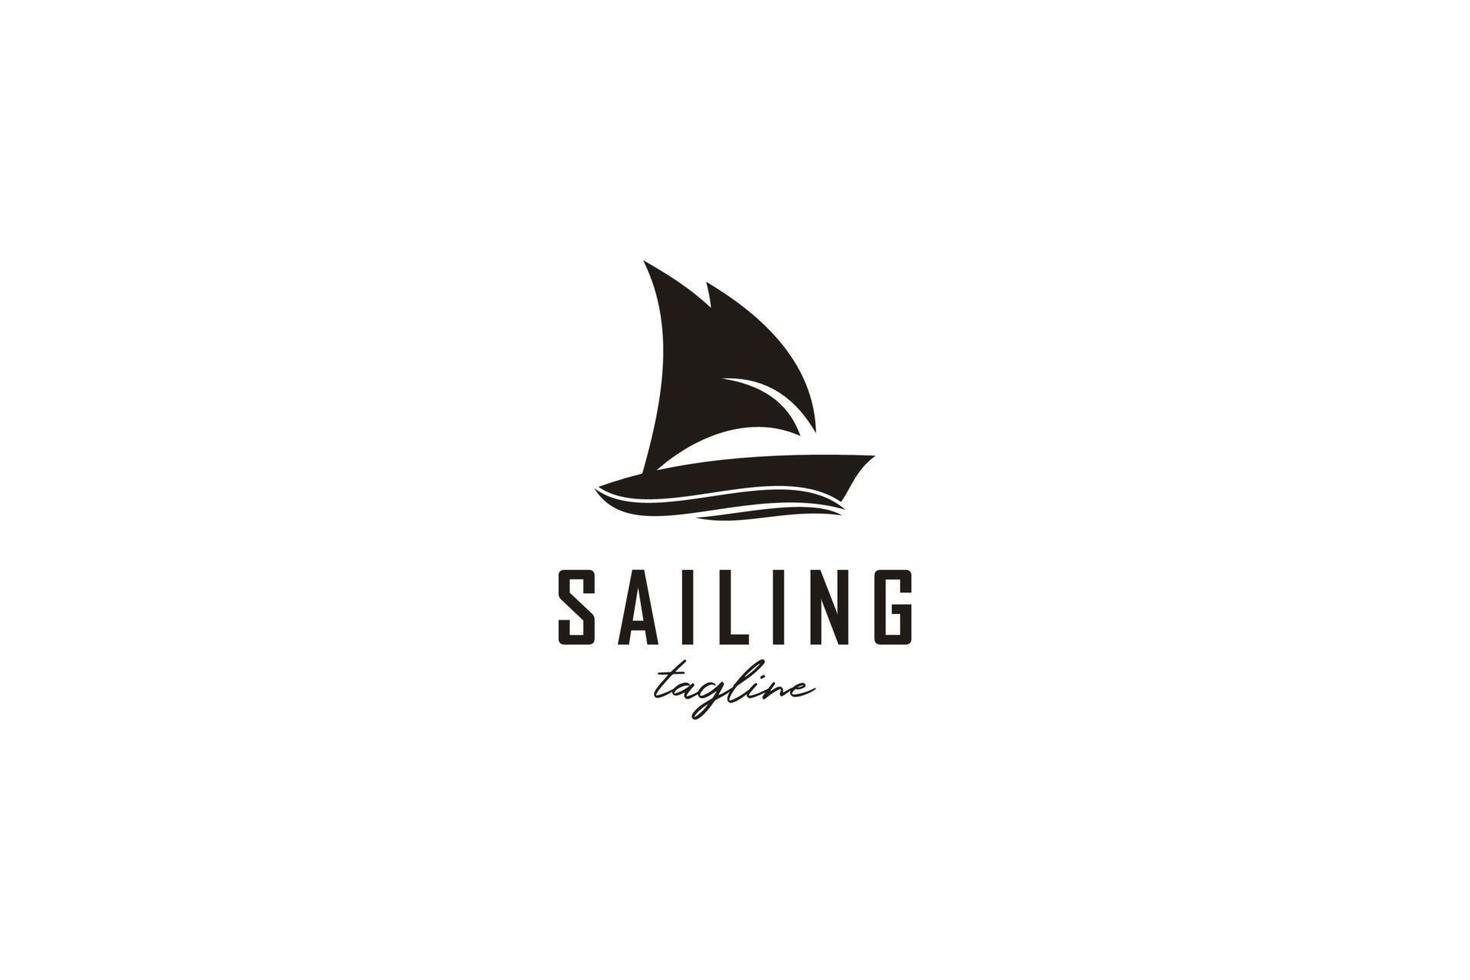 semplice ispirazione per il design del logo della siluetta della barca a vela vettore